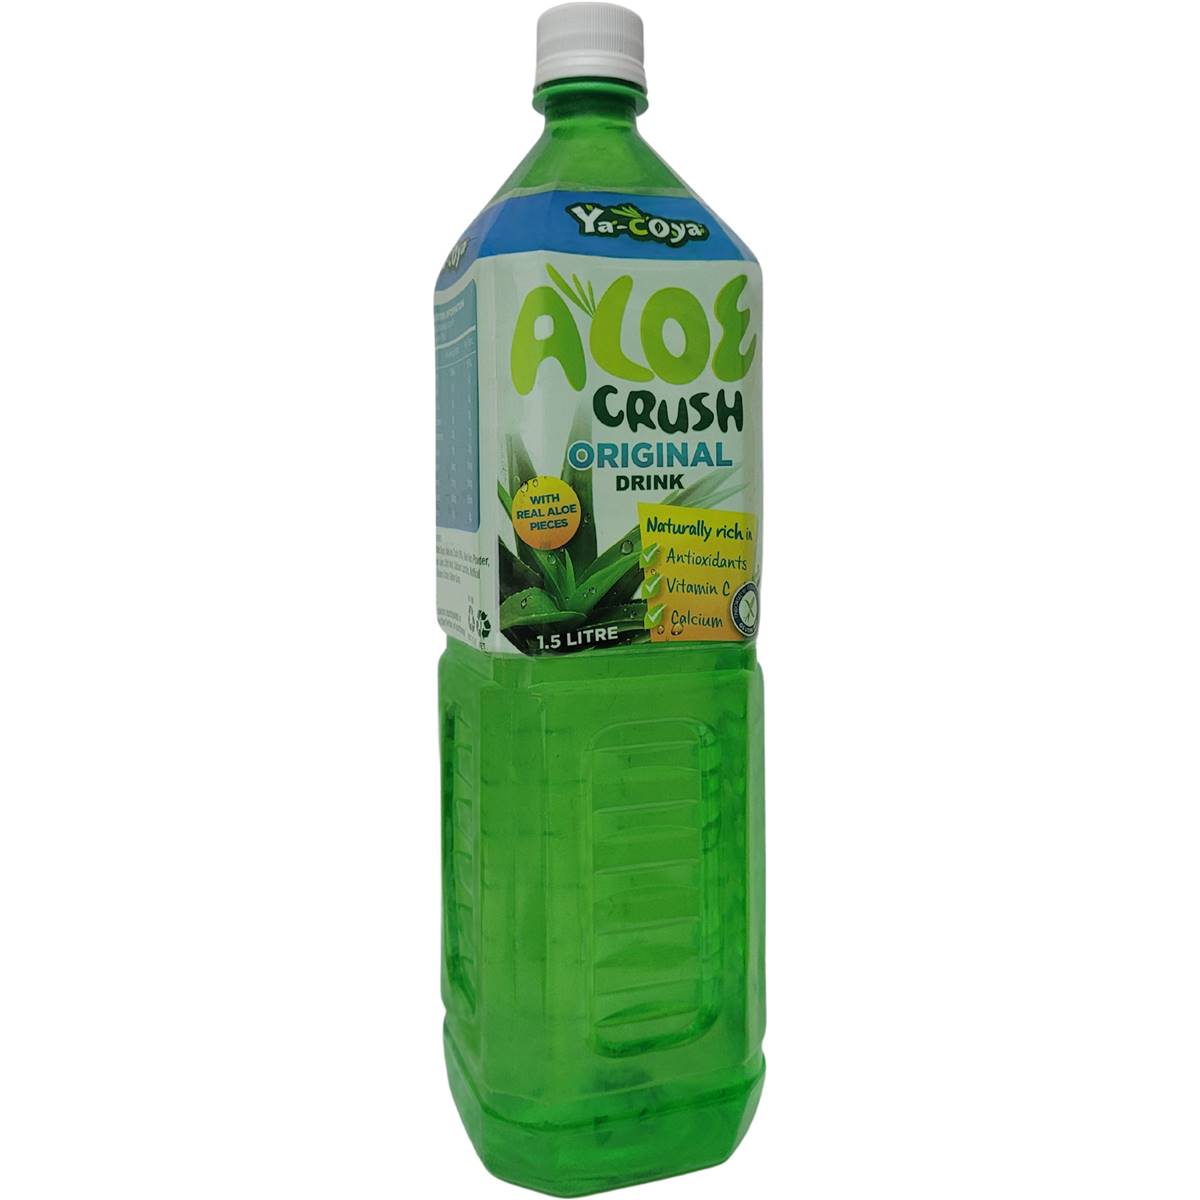 Calories in Ya - Coya Original Aloe Crush